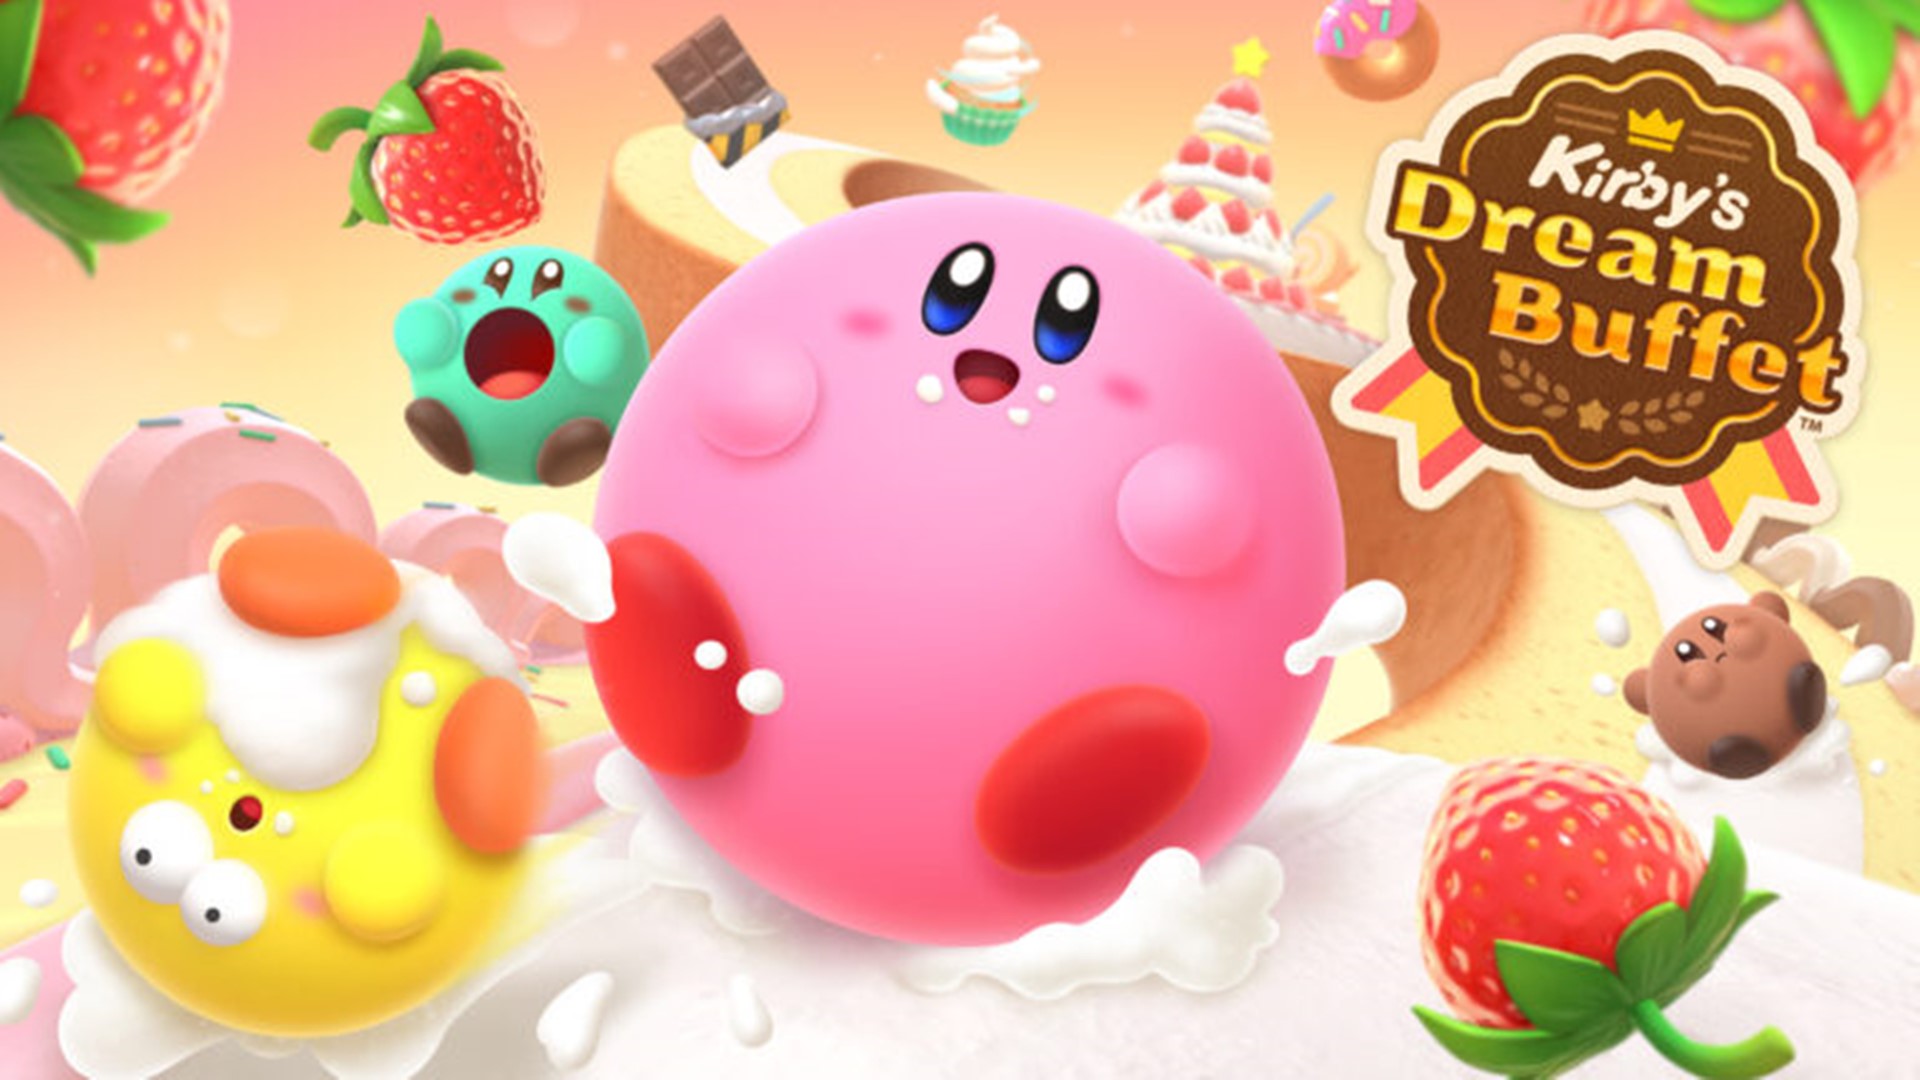 ปู่นินเปิดตัวเกม Kirby’s Dream Buffet บน Nintendo Switch